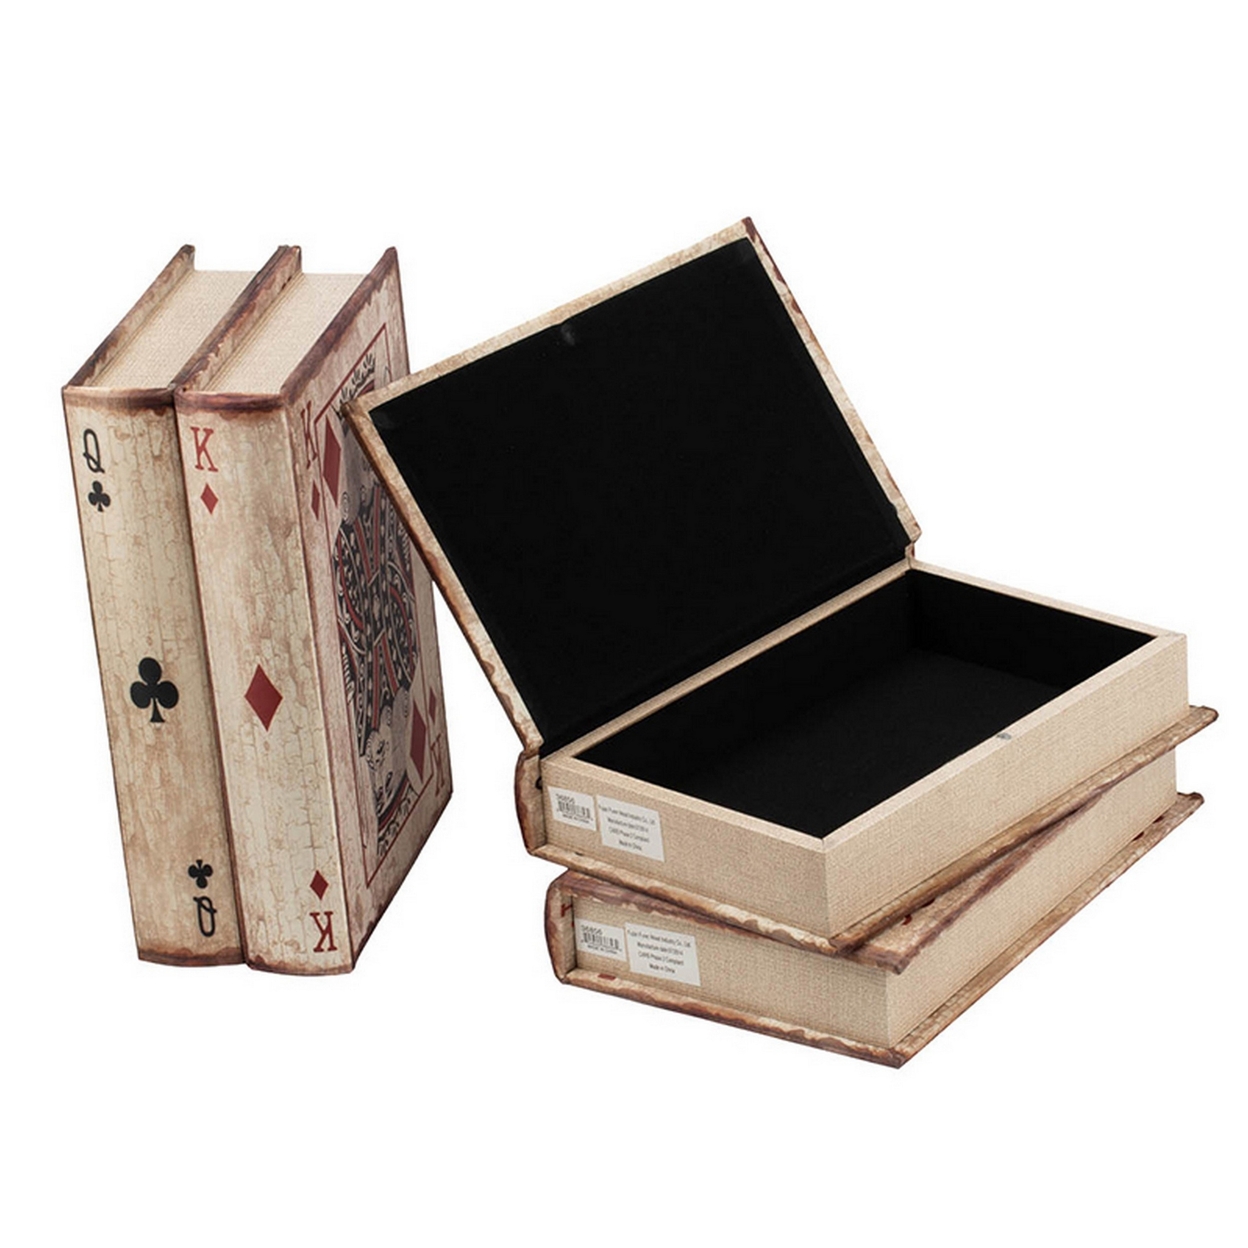 Set Of 4 Storage Boxes, Bookshelf Design, Playing Card Print, Antique Brown- Saltoro Sherpi